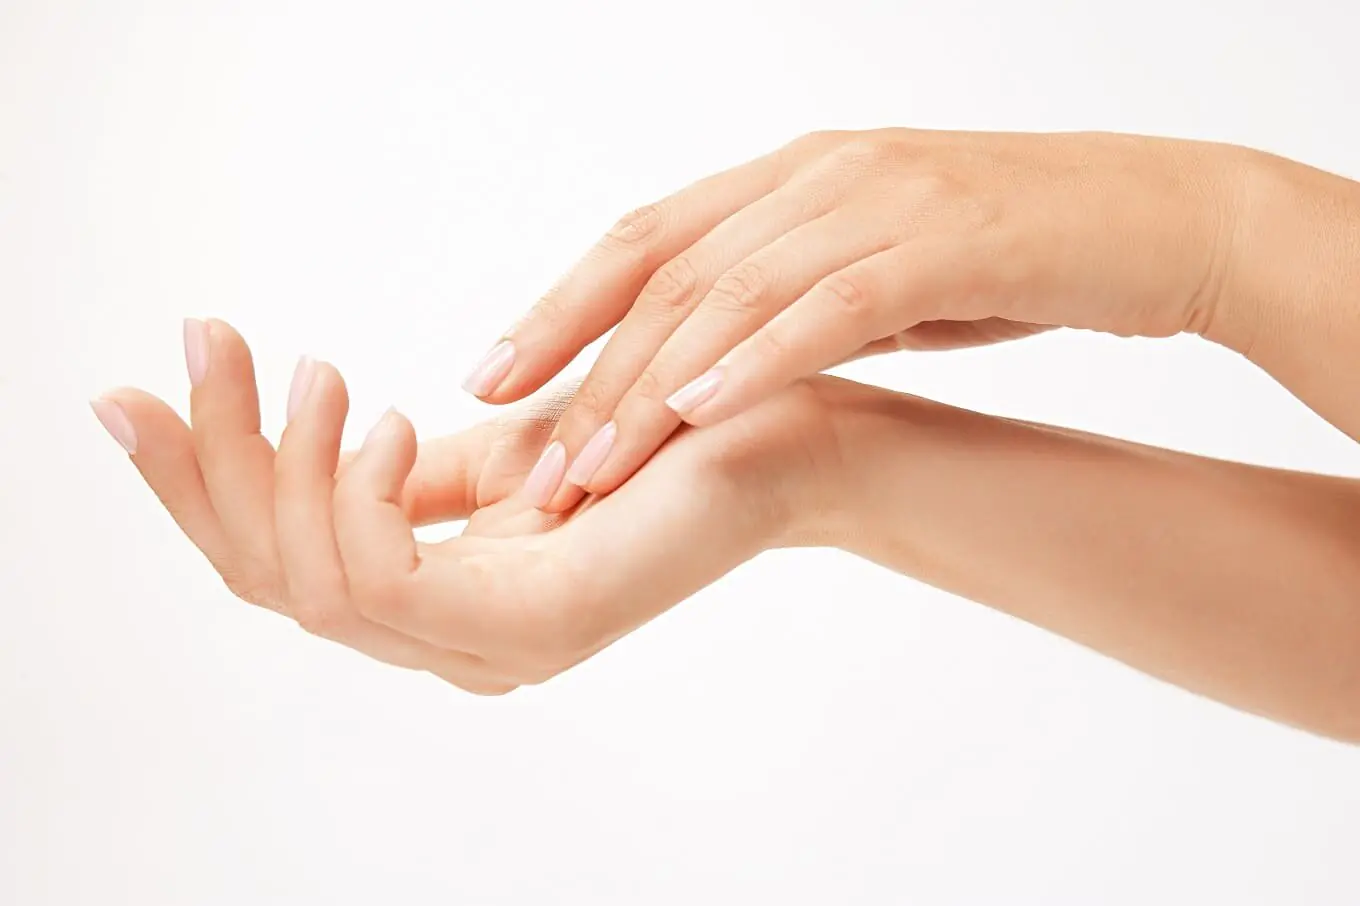 מכבי אסתטיקה - תל אביב-יפו - טיפול לחידוש עור הידיים